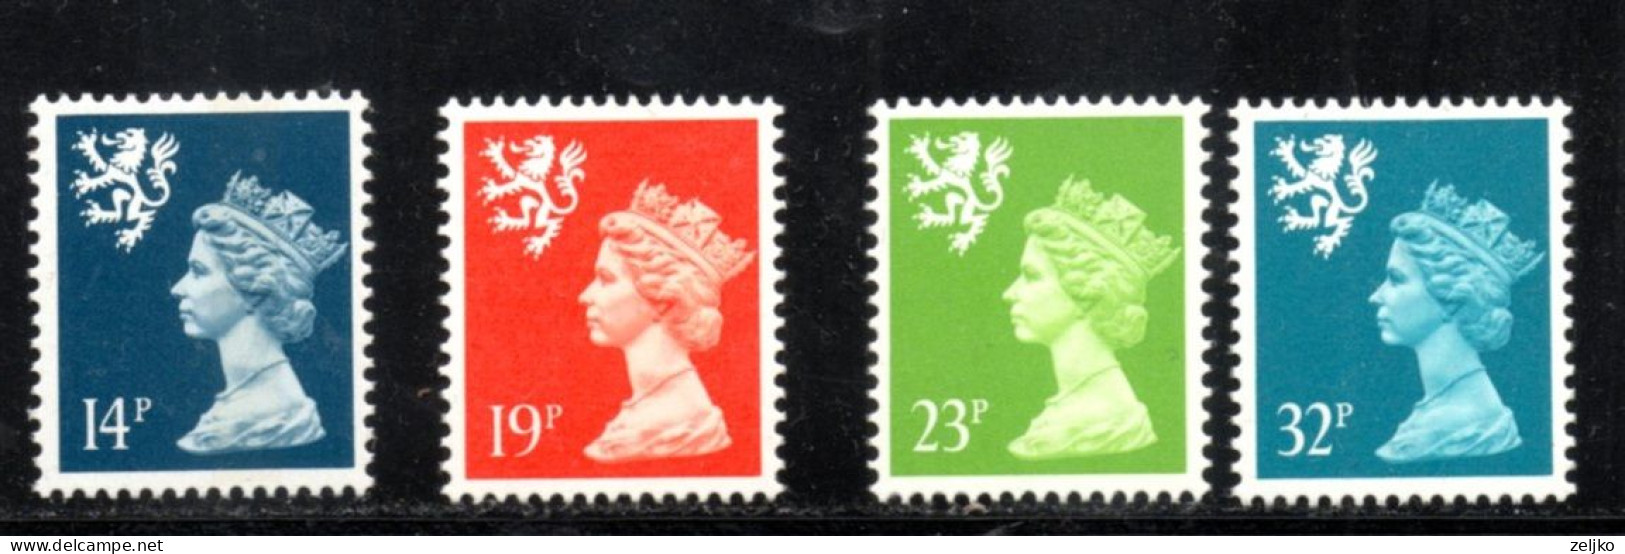 UK, GB, Great Britain, Regional Issue, Scotland, MNH, 1988, Michel 49 - 52, Queen Elizabeth - Schotland